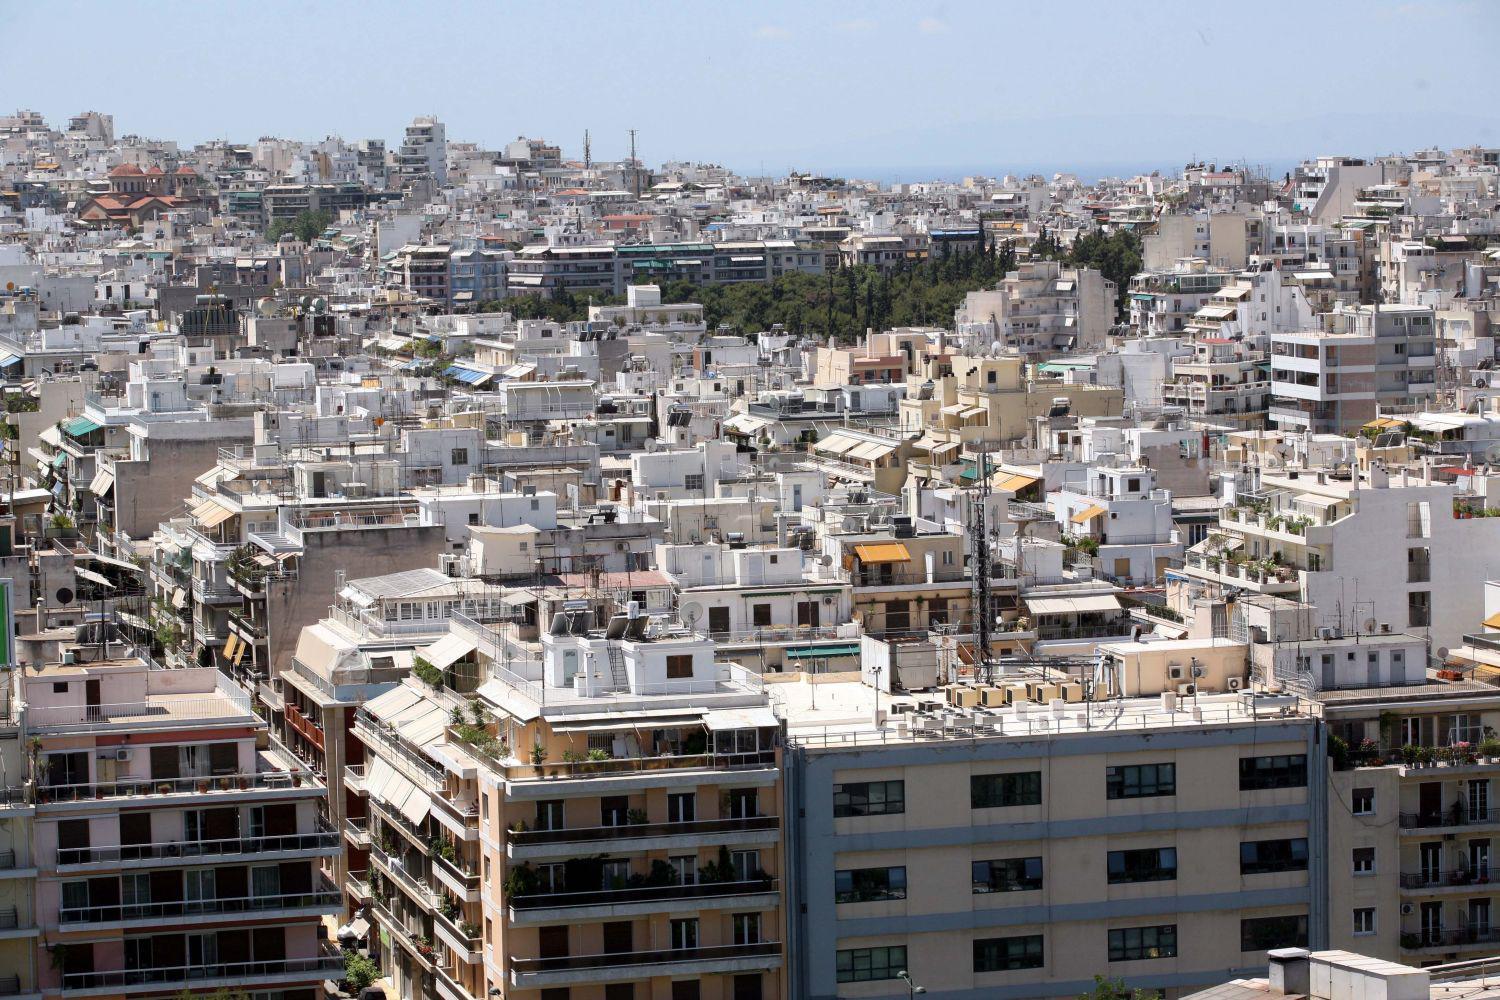 Δωρεάν σπίτια σε χιλιάδες Έλληνες: Η διαδικασία για τα αποκτήσετε